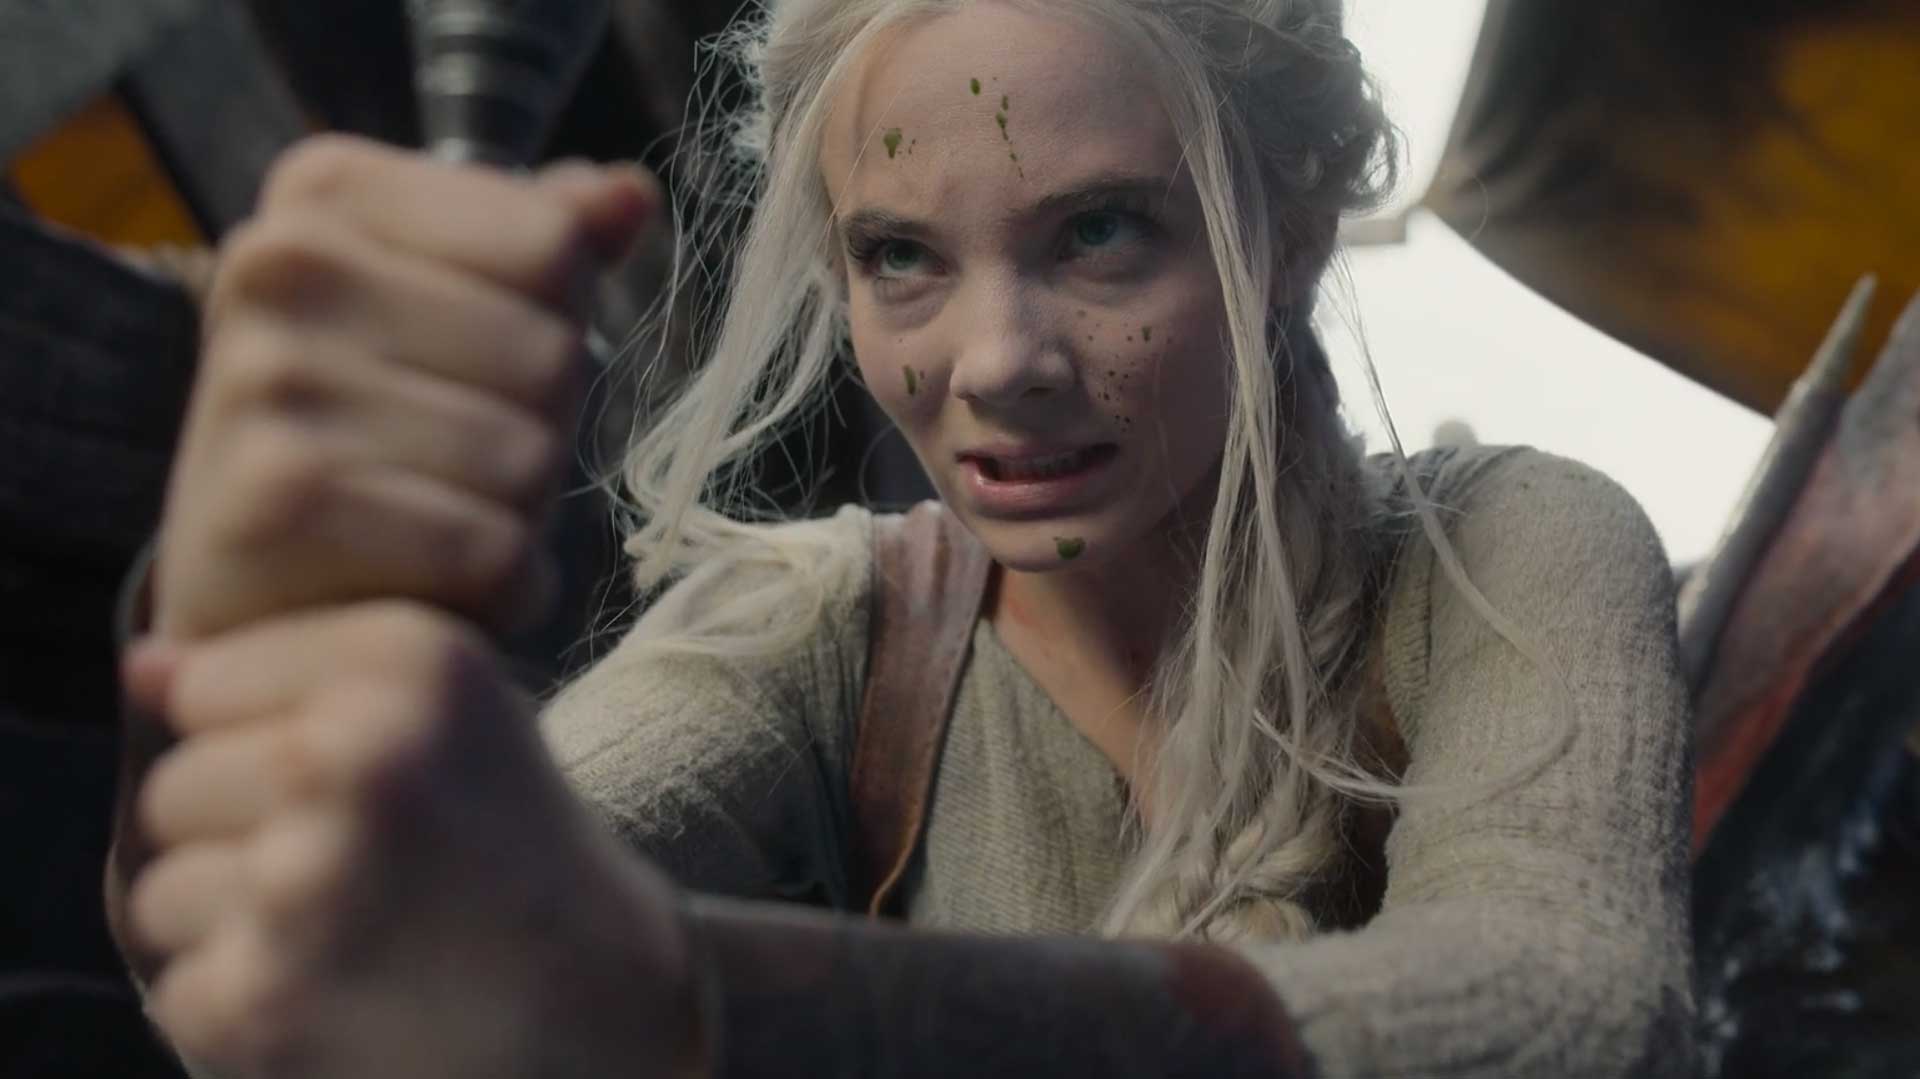 سیری در حال کشتن یک هیولا روی کشتی در فصل سوم سریال The Witcher، محصول شبکه آنلاین نتفلیکس